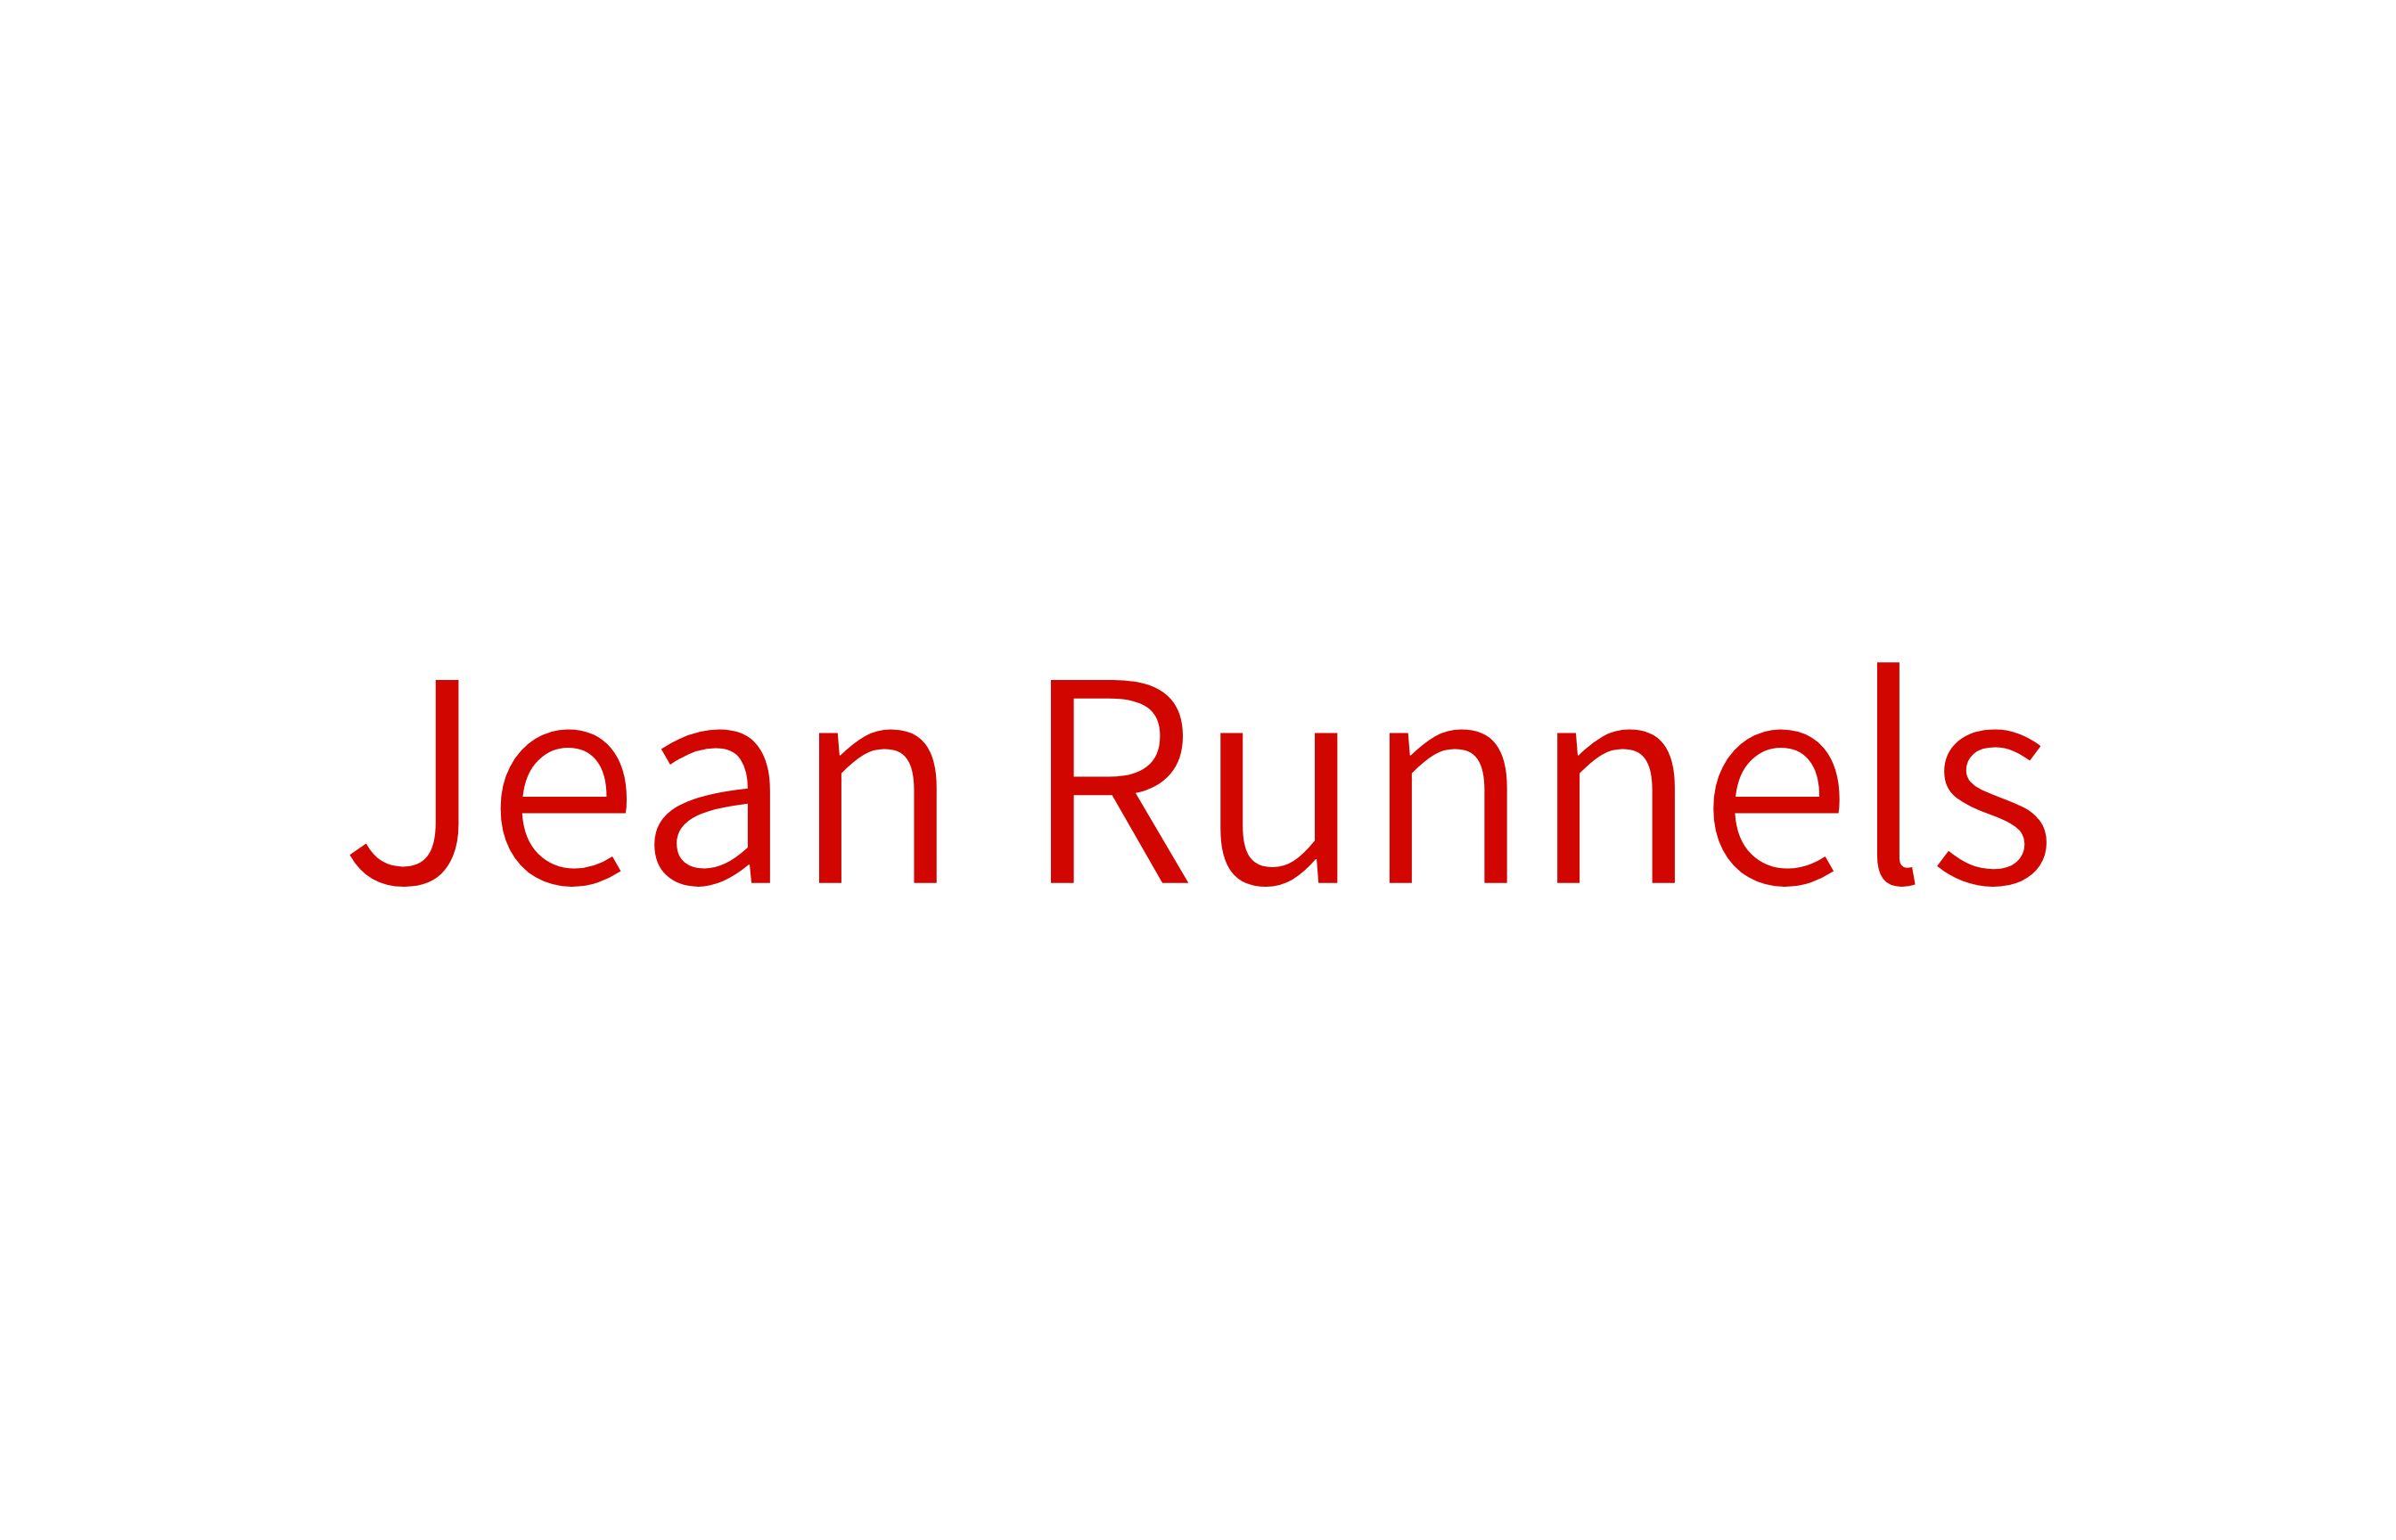 Jean Runnels